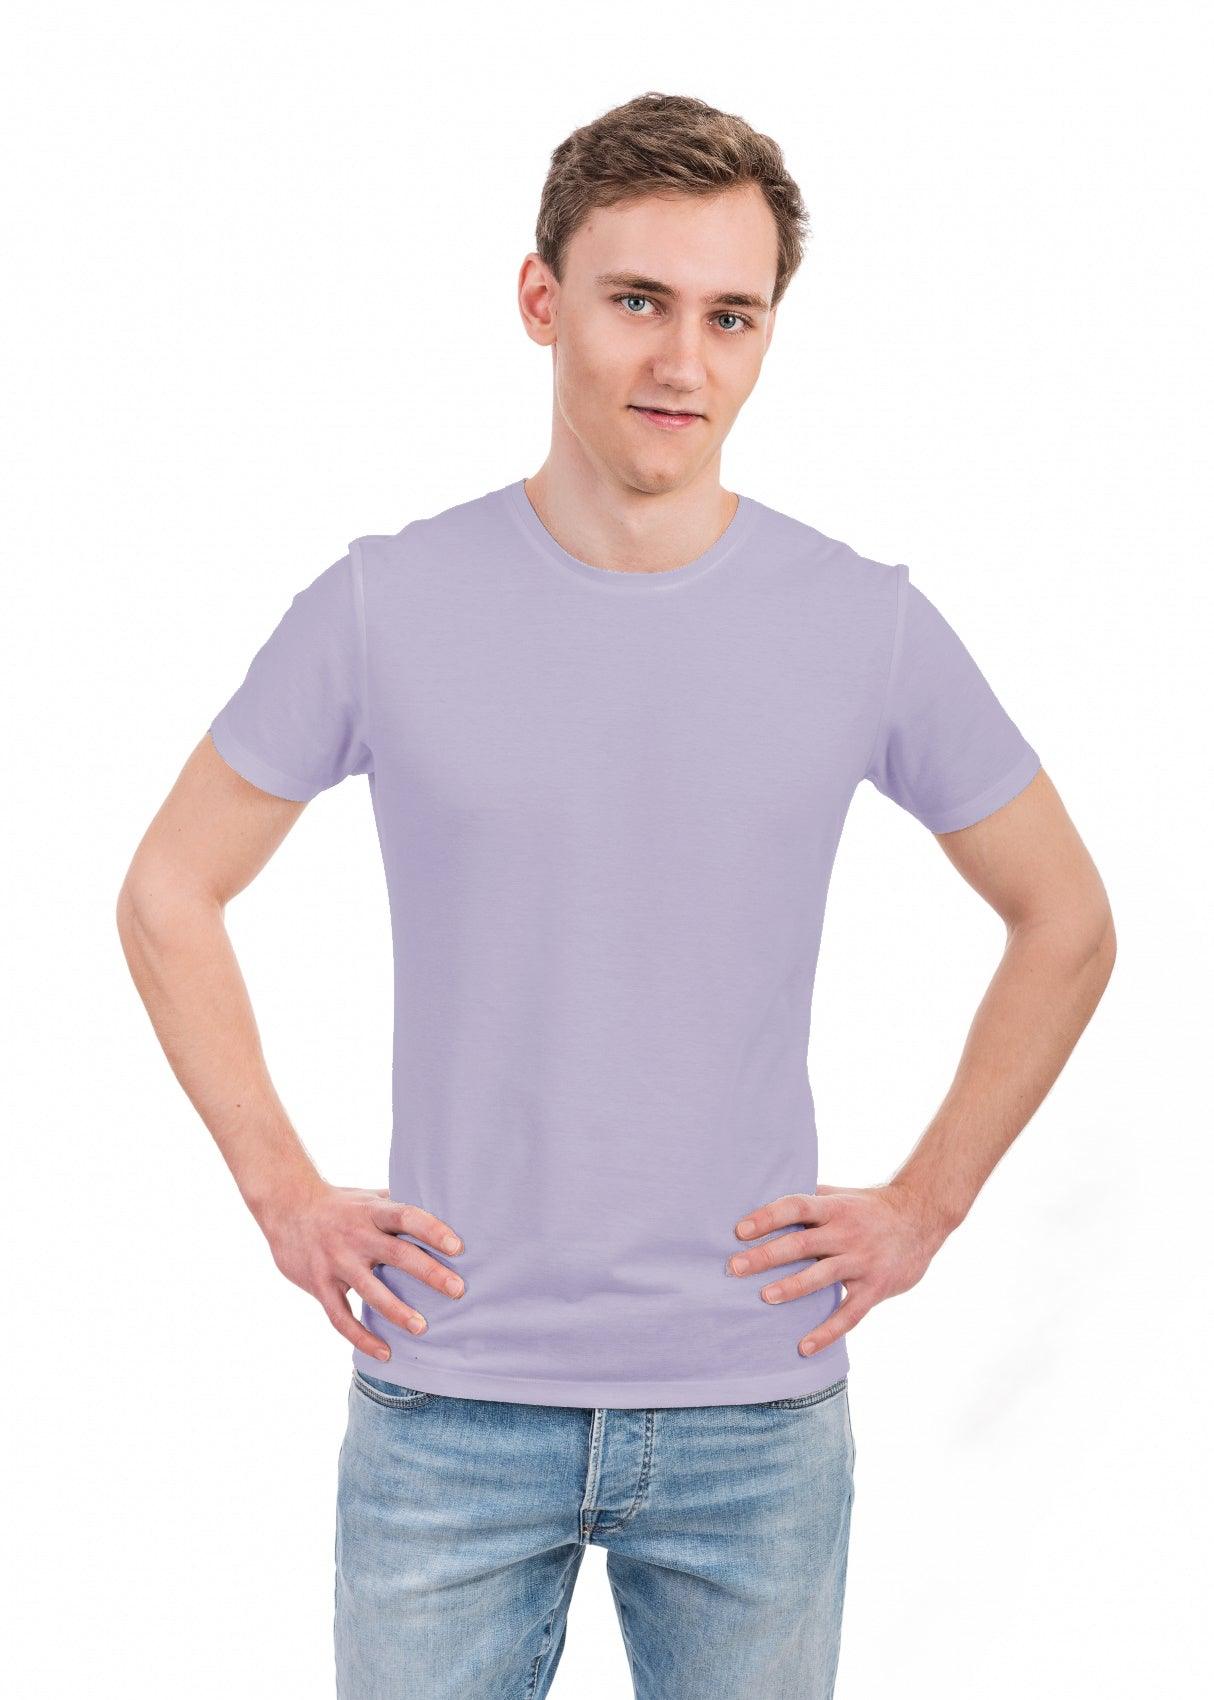 Smarttan lavendel (lilla) läbipäevituv meeste T-särk - Smarttan